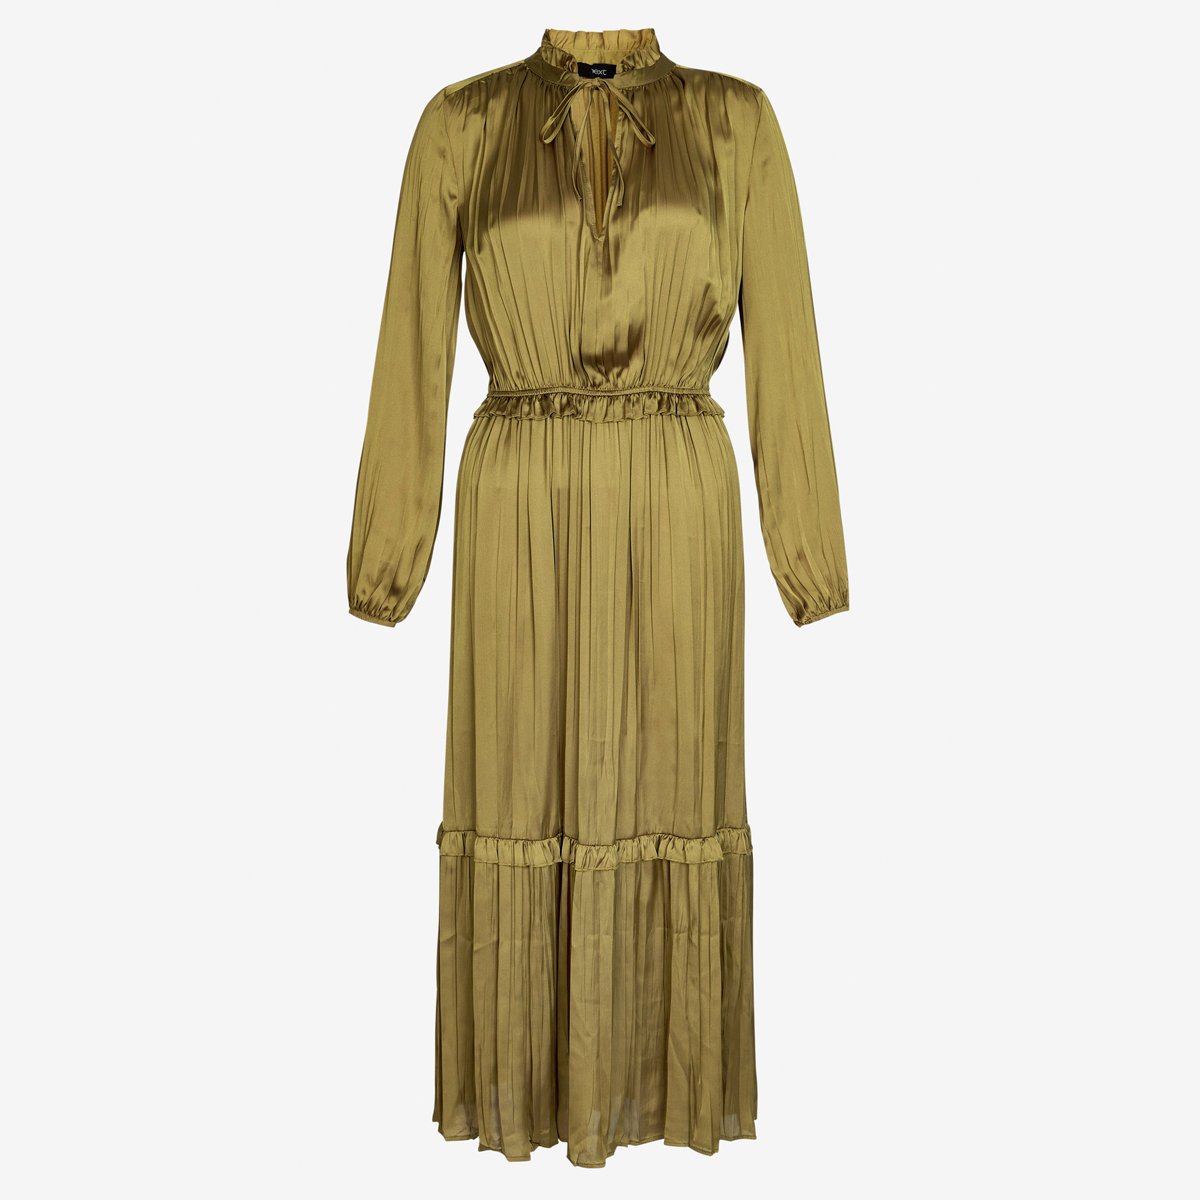 Dress, £48